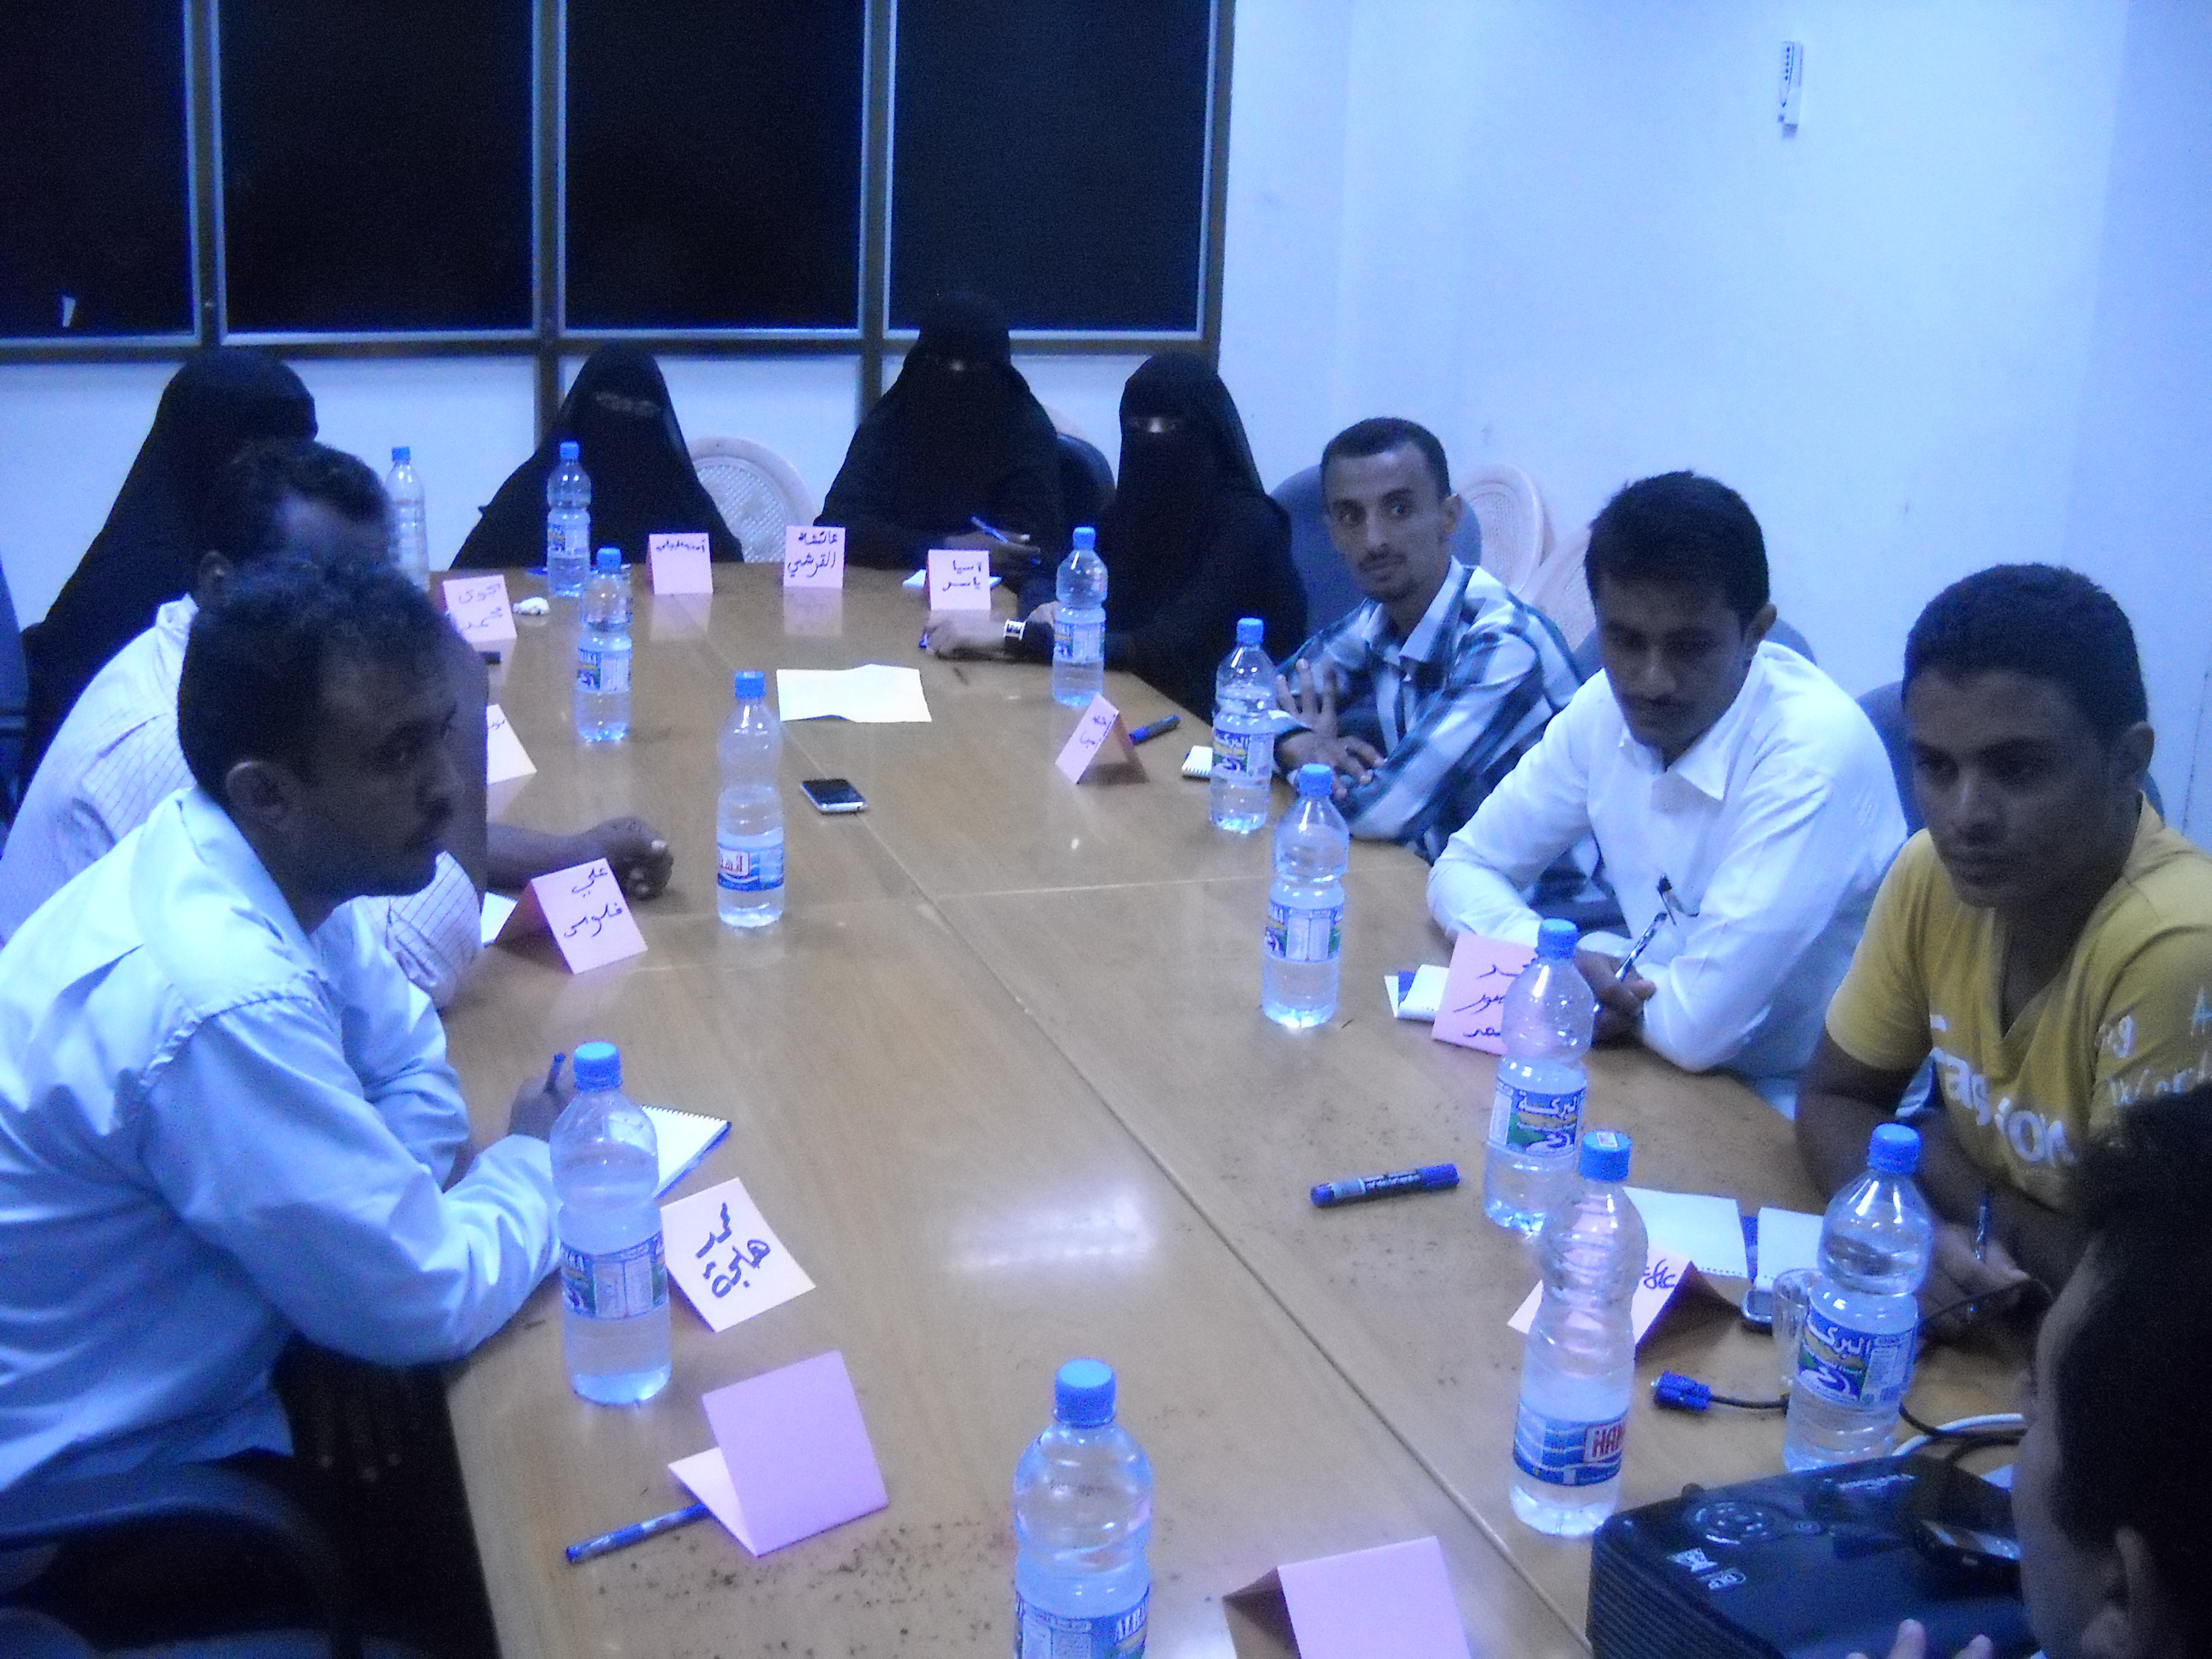 Al-Hodeidah Focus Group - Political & Economic Empowerment of Women & Youth